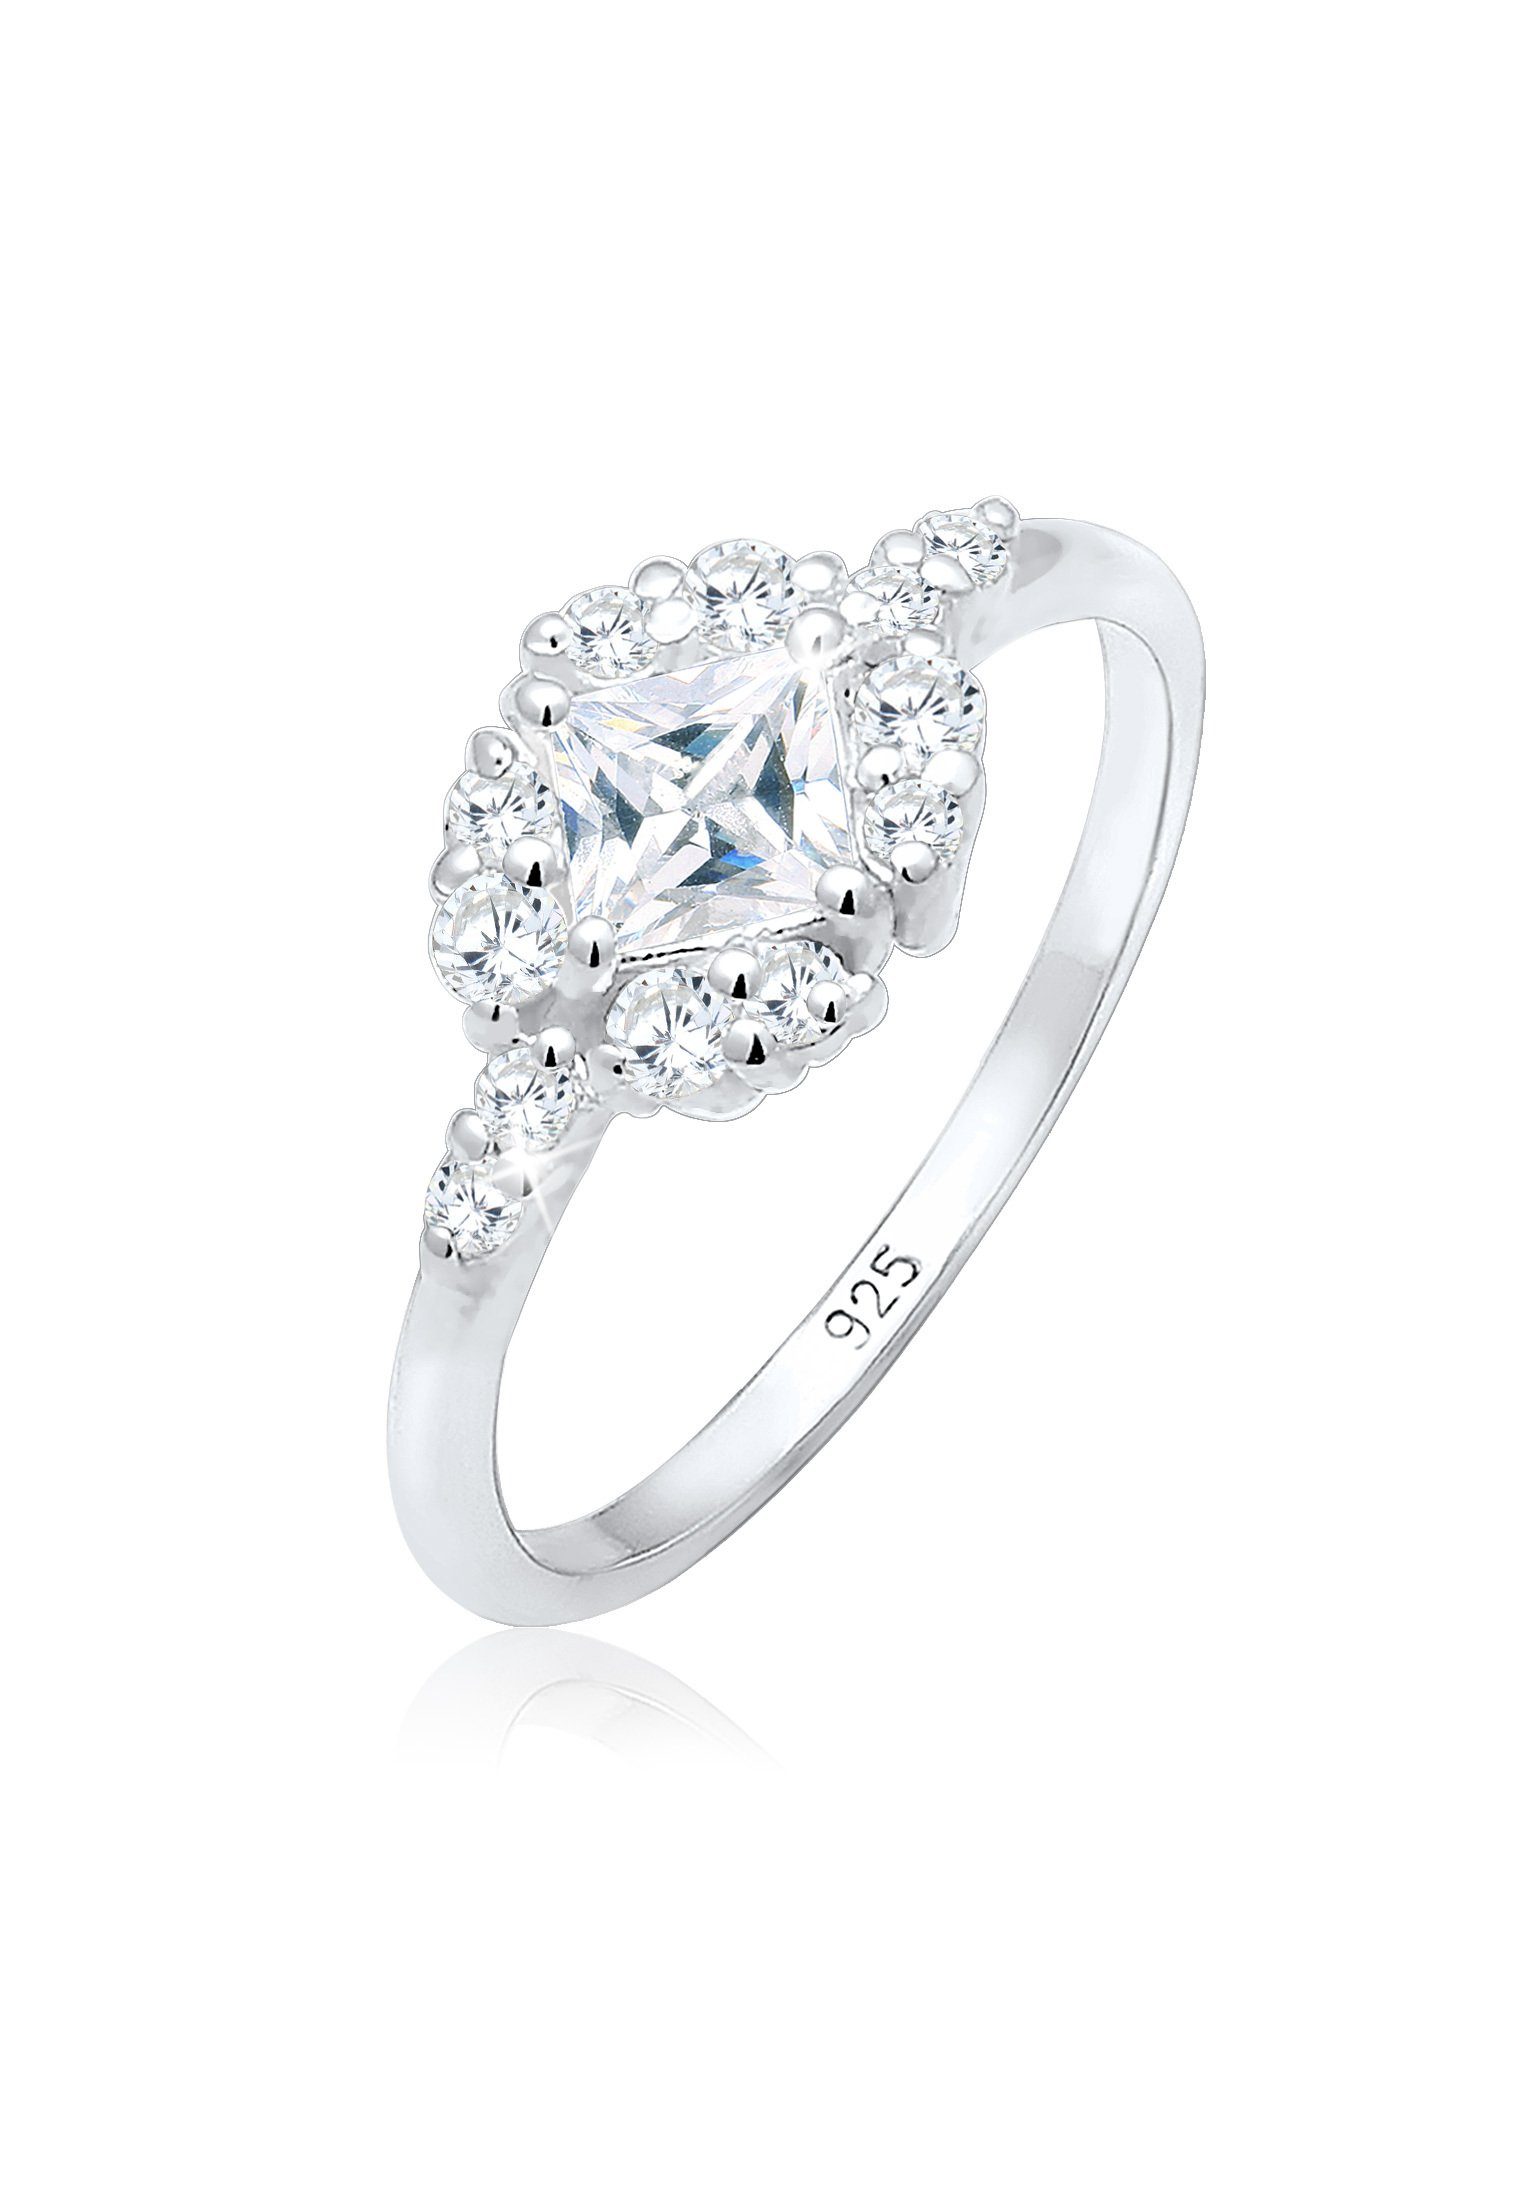 Kristall Verlobung Steine Verlobungs-Ring Zirkonia Verlobungsring Elli 925 Premium 925 Romantisch Sterling Silber aus Silber,